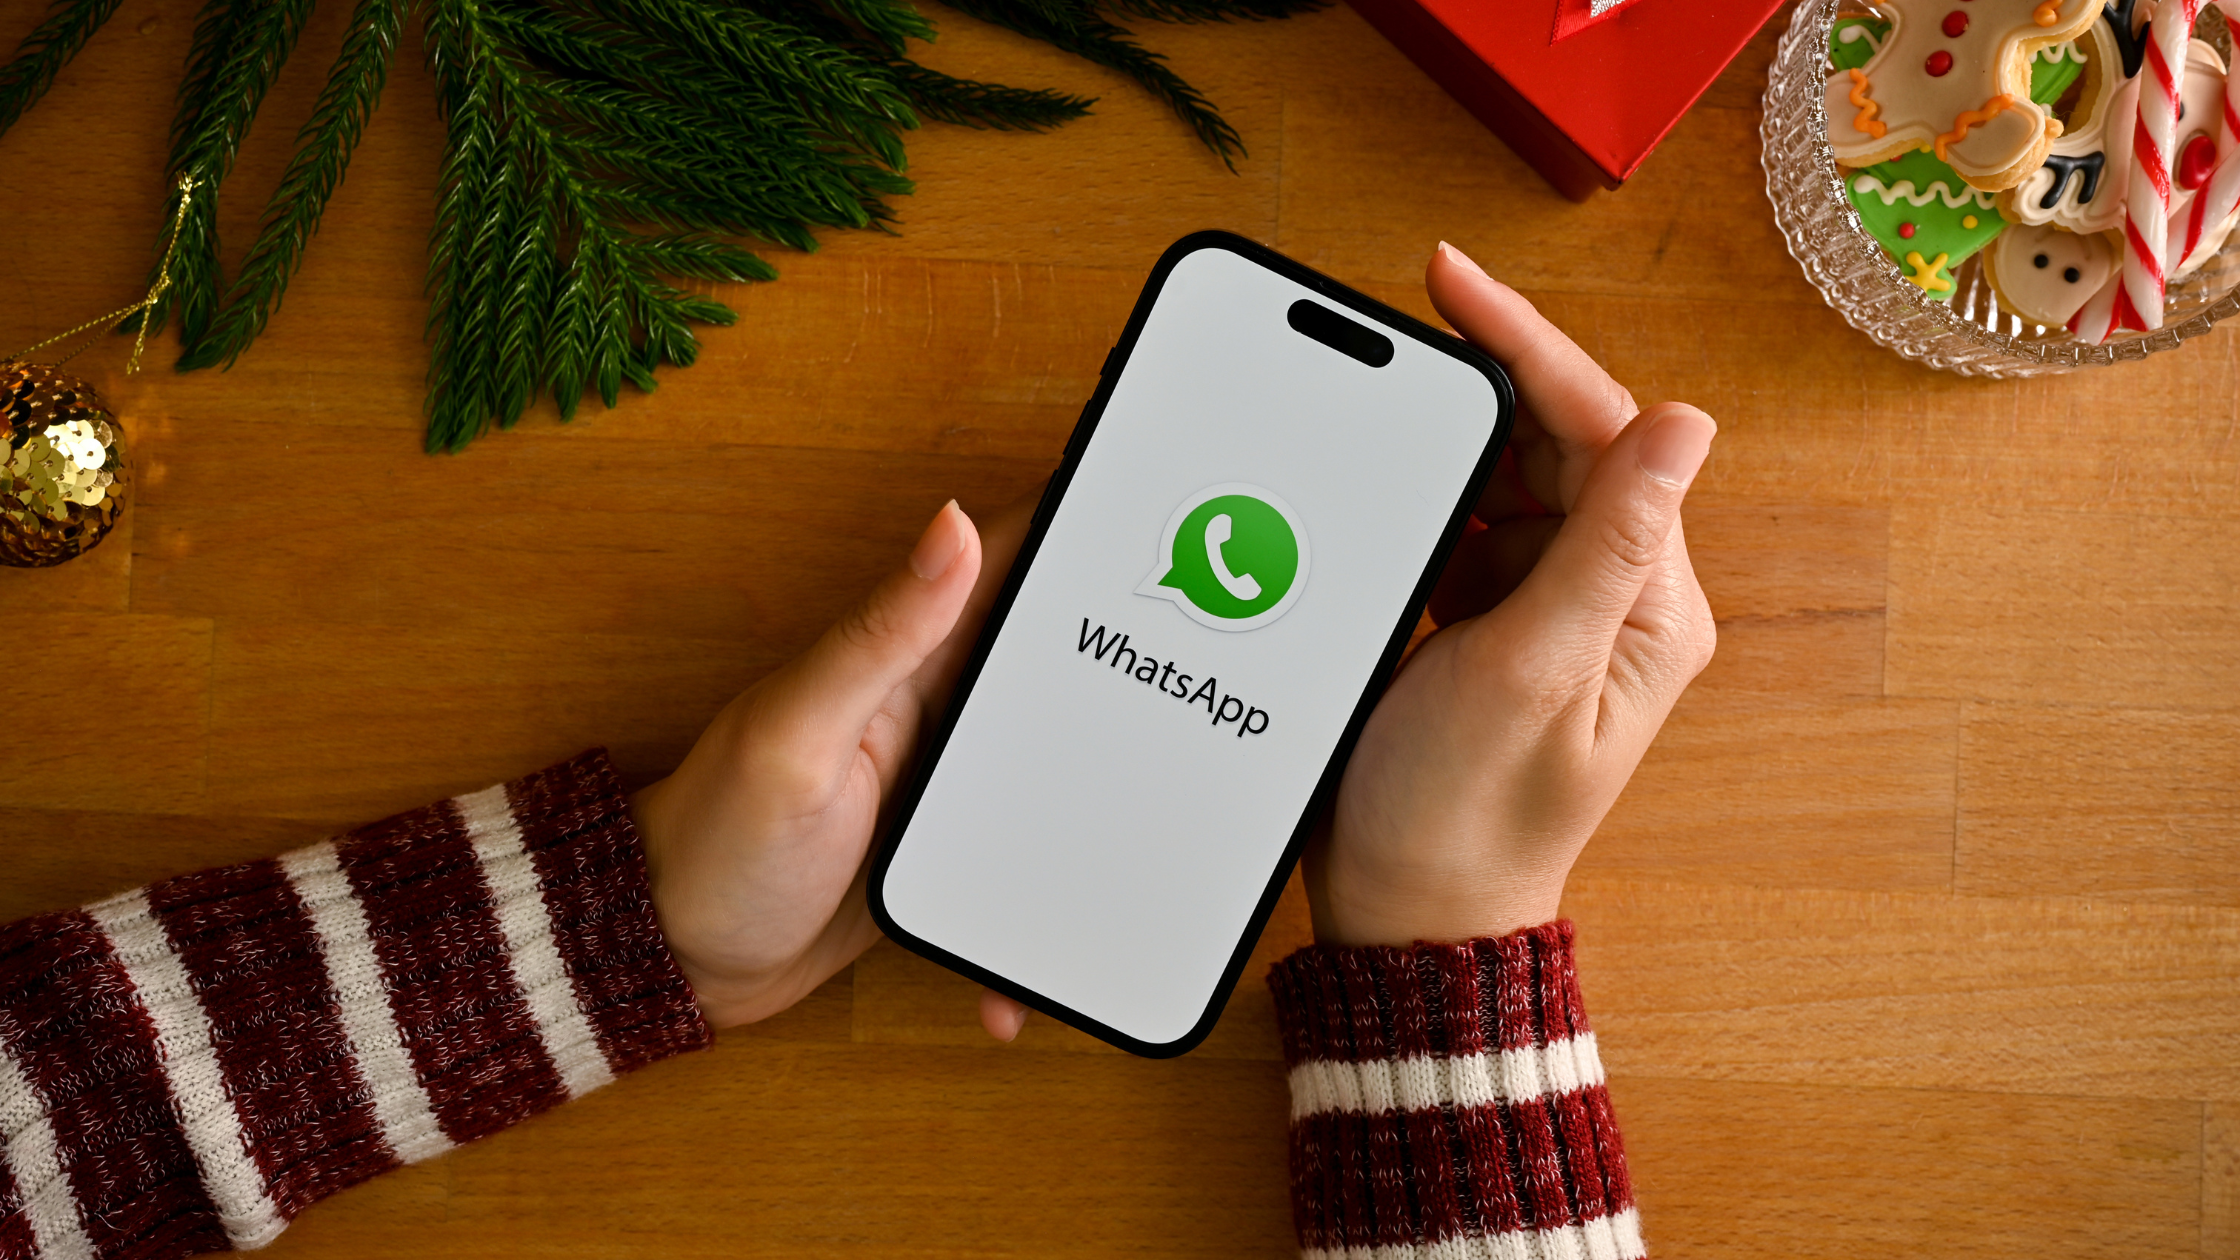 Desvendando o recurso secreto do WhatsApp: Aprenda a conversar com seu próprio número!